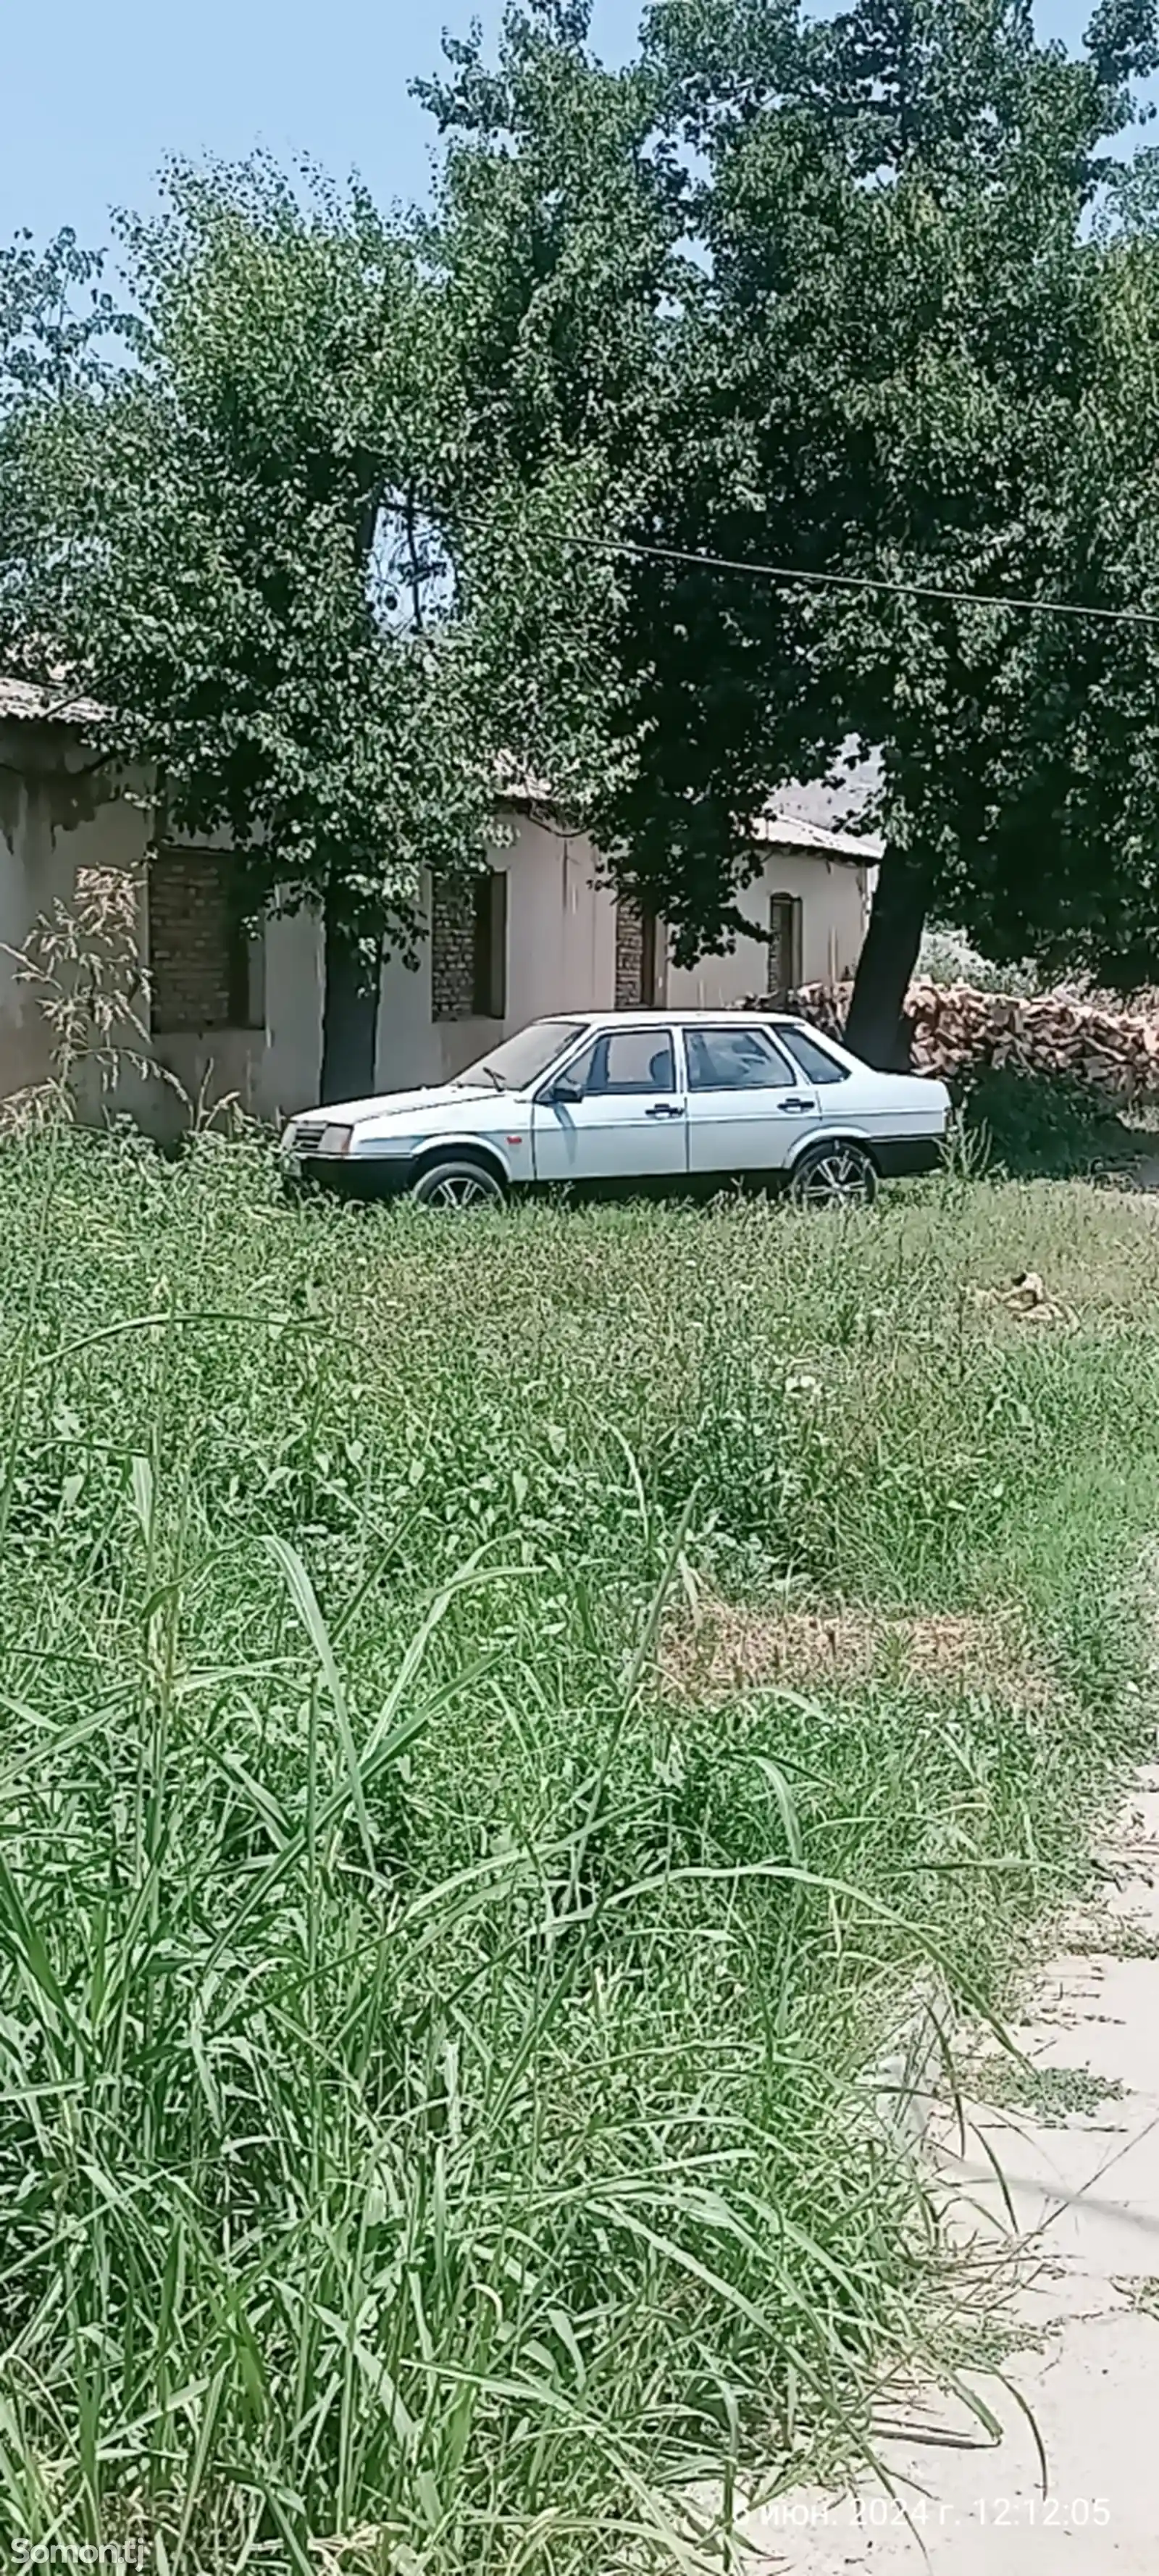 ВАЗ 21099, 1997-7